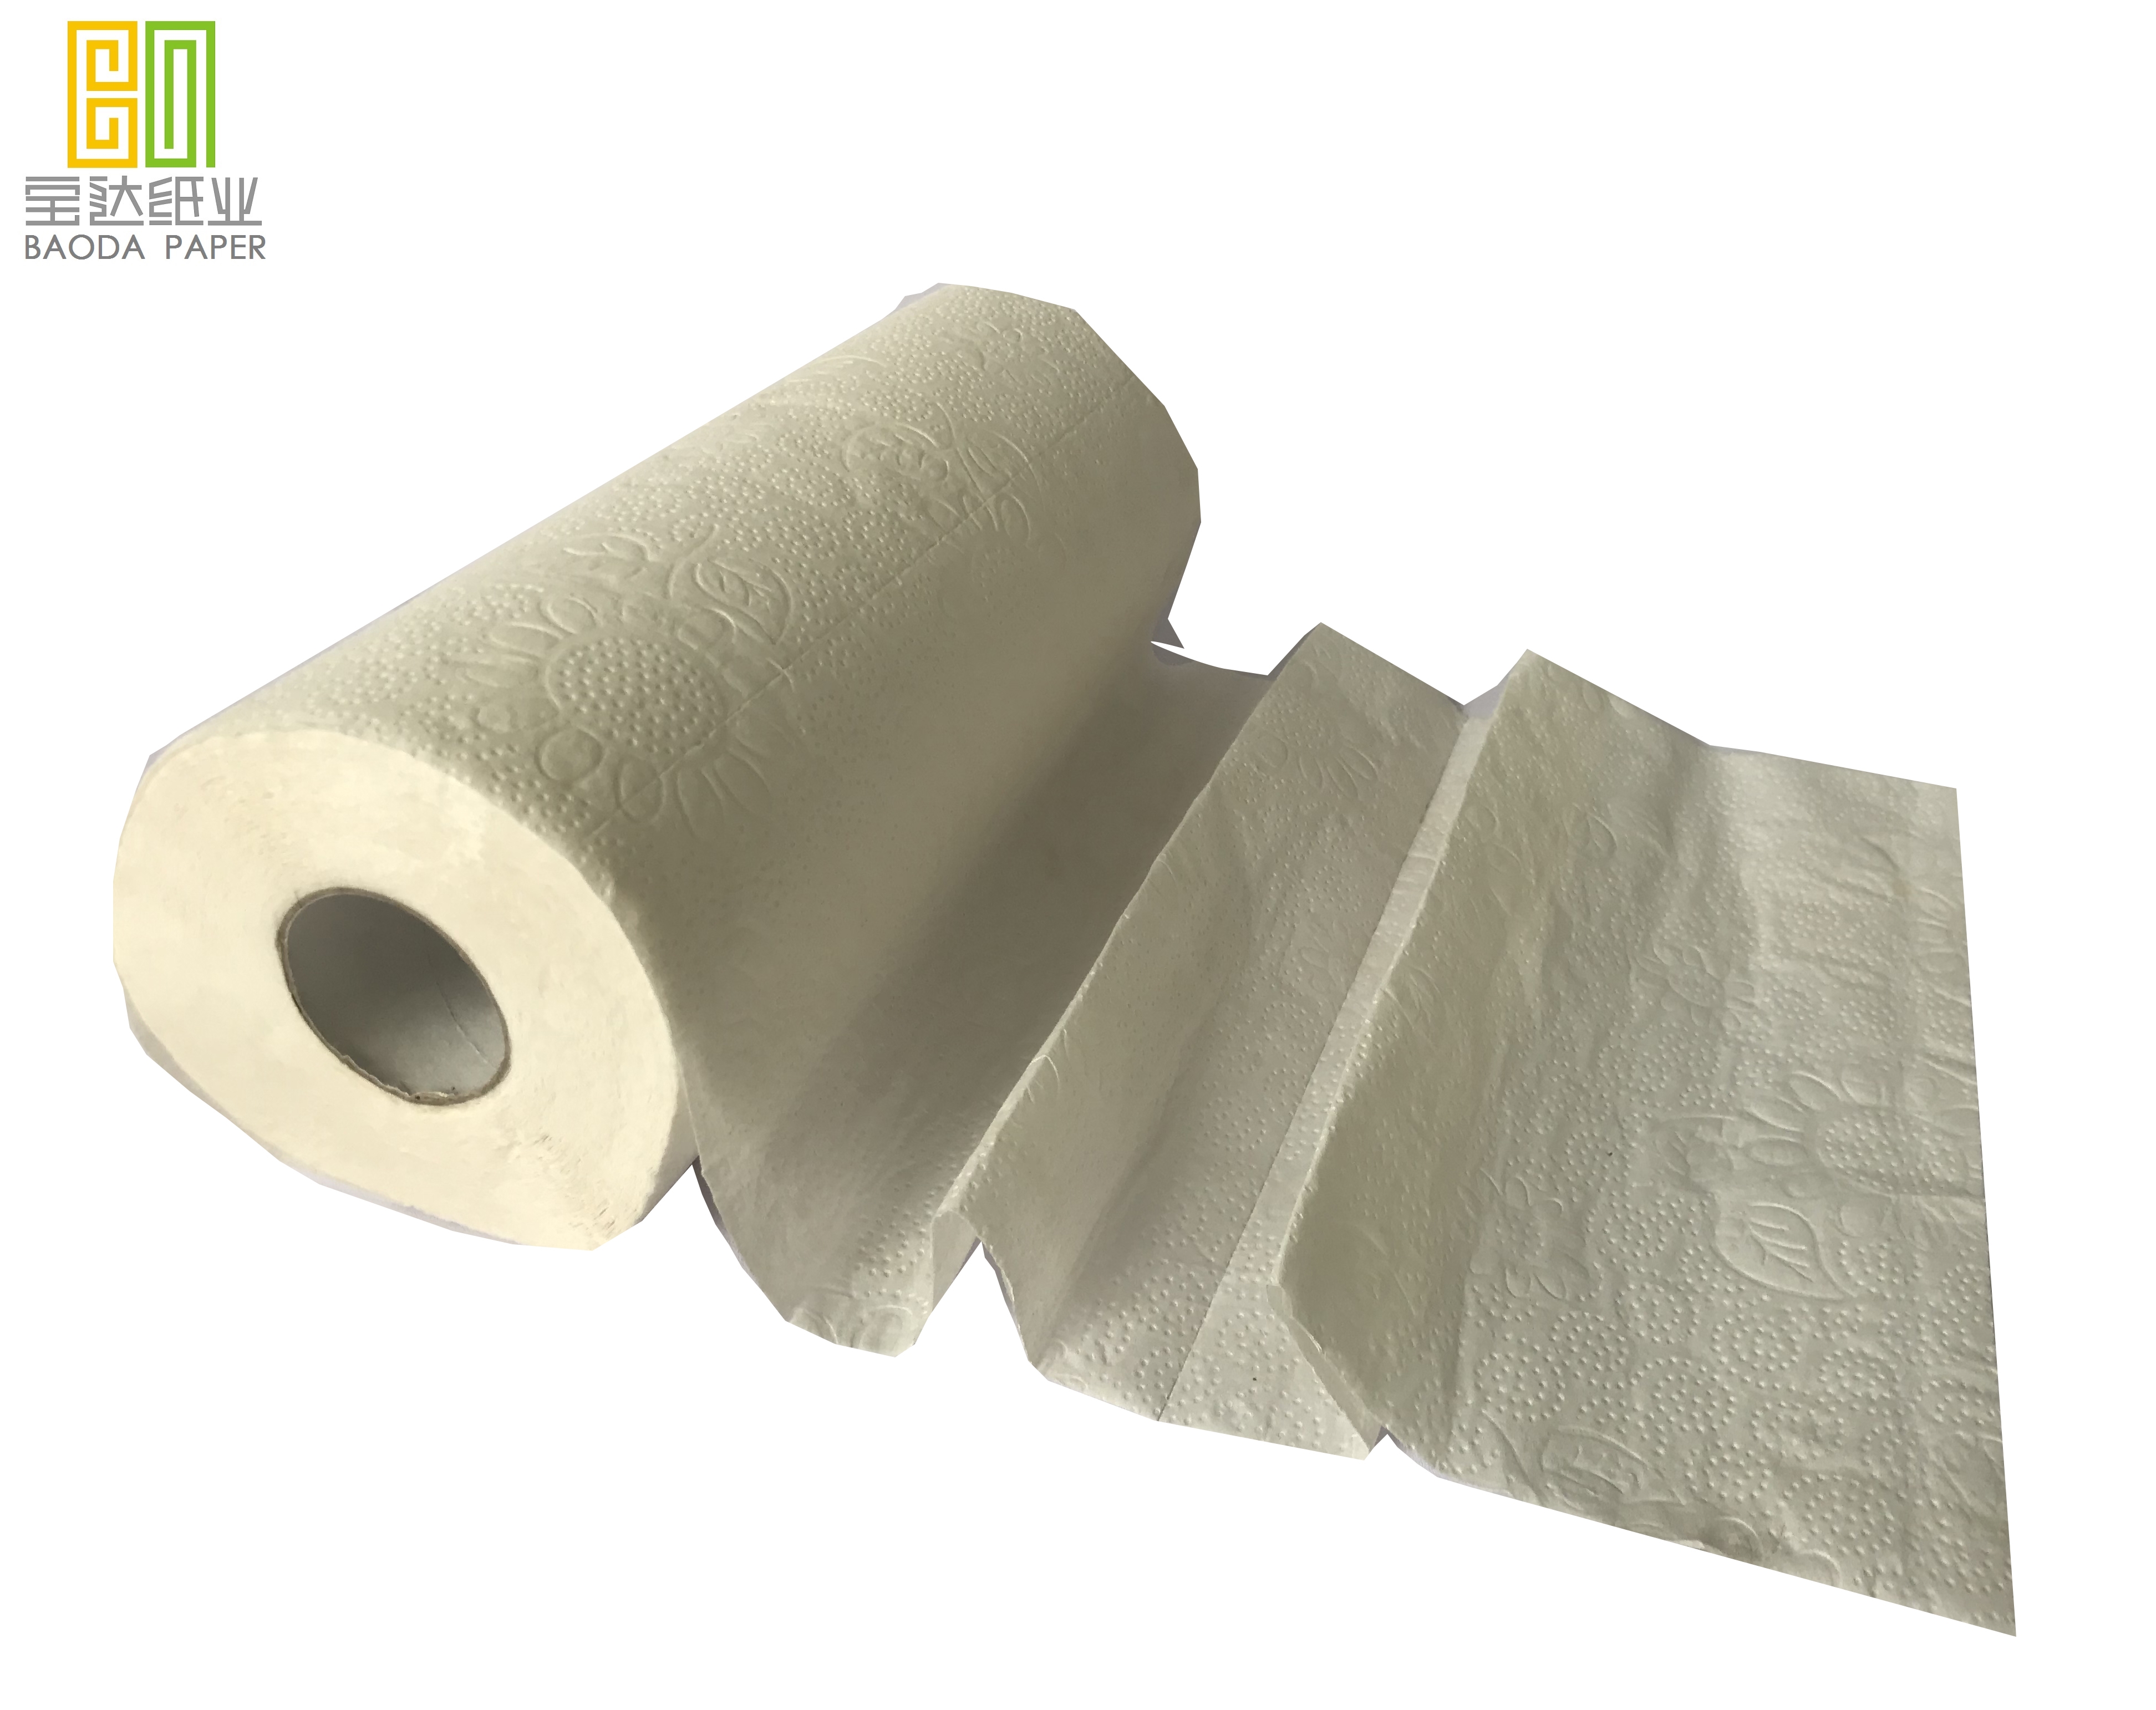 Decontamination kitchen paper towel rolls for restaurants